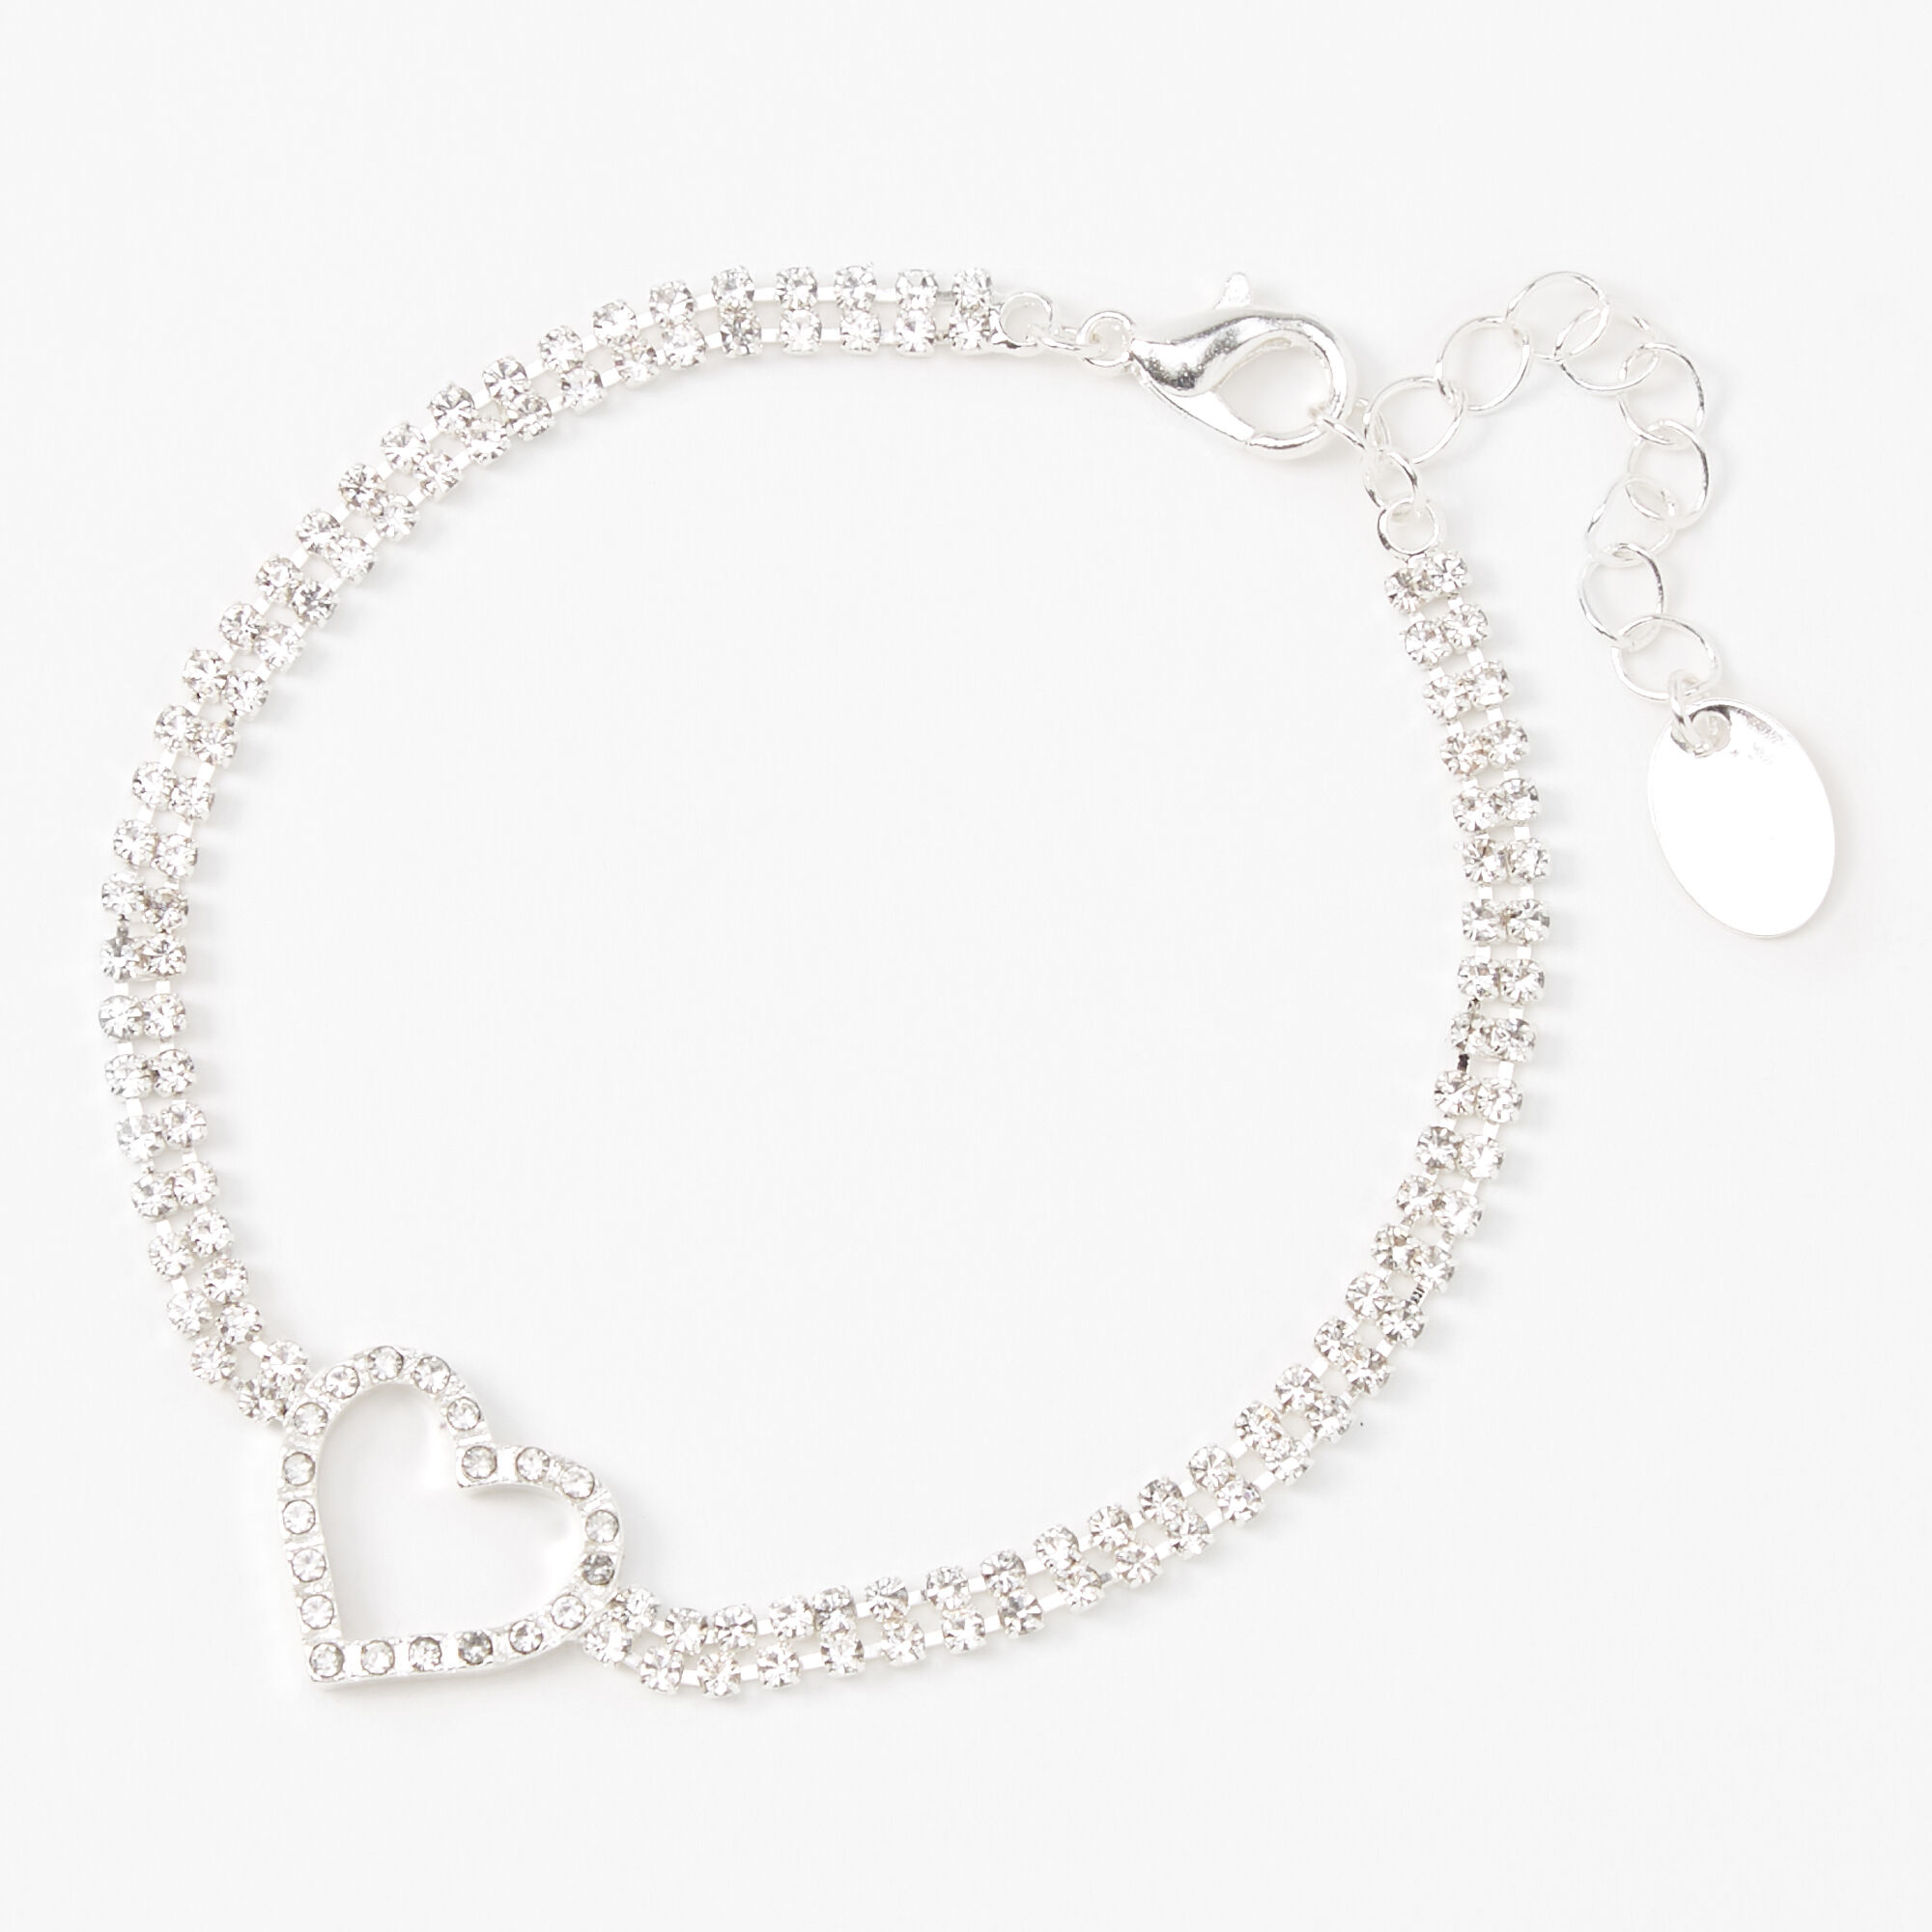 Sterling Silver Heart Link Bracelet, Heart Bracelet With Heart Charm - Etsy  | Chunky silver bracelet, Heart bracelet, Bracelet gift